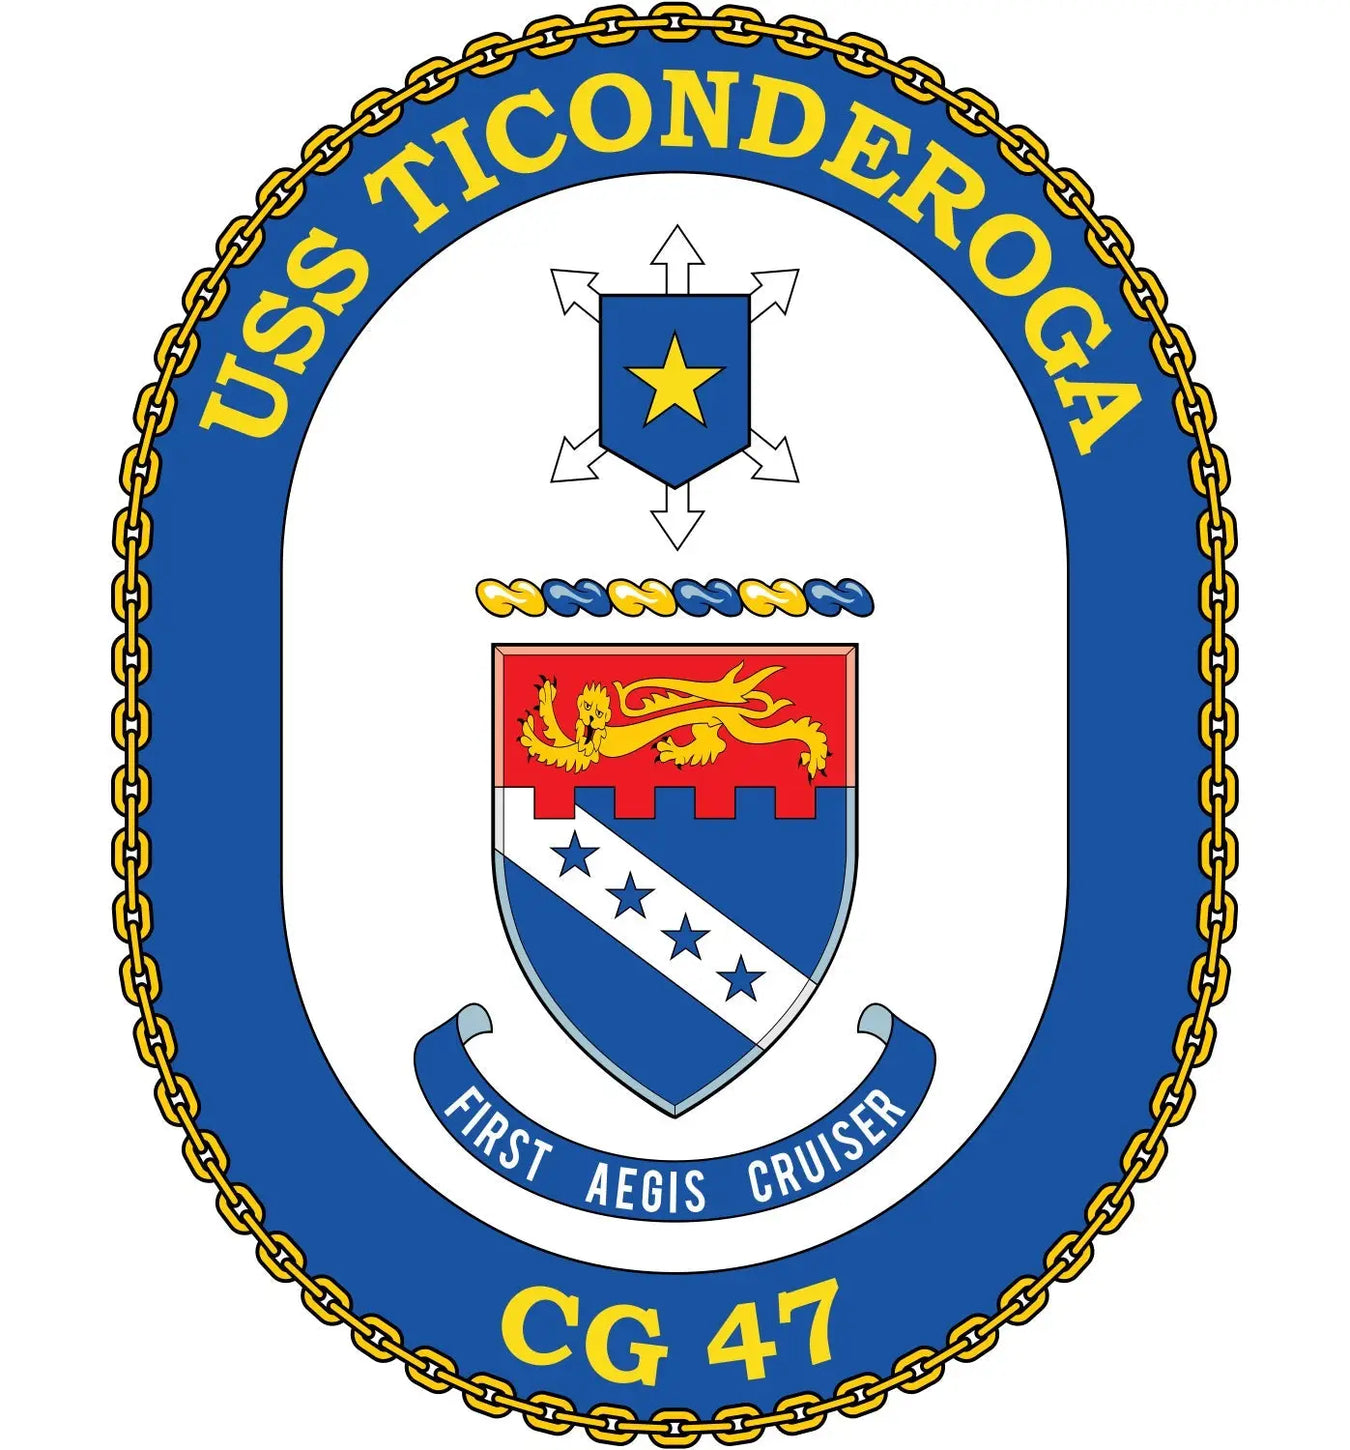 USS Ticonderoga (CG-47)